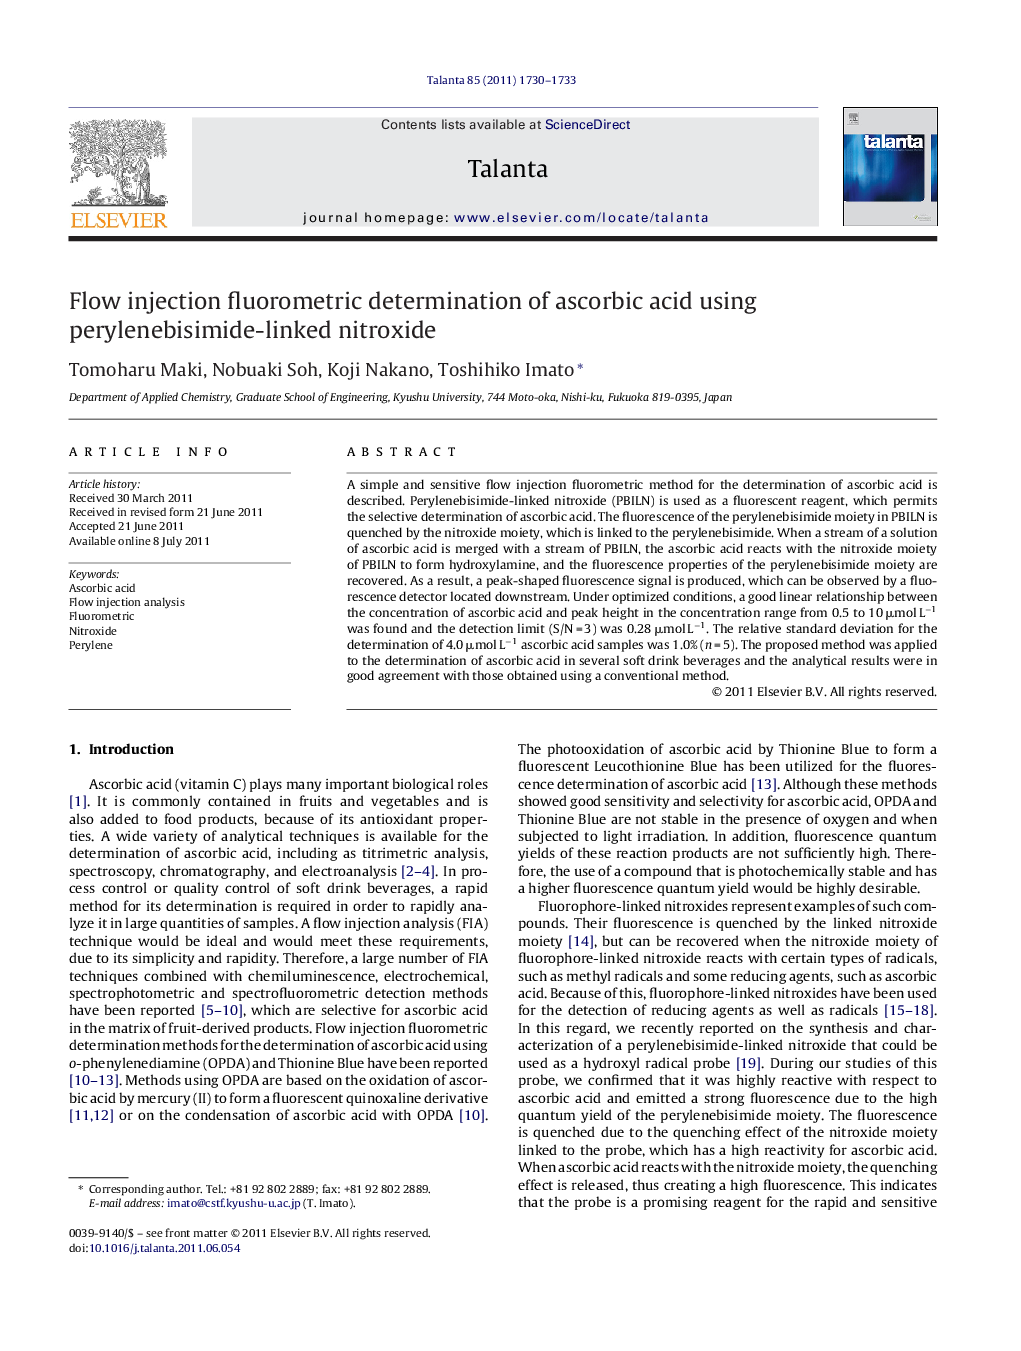 Flow injection fluorometric determination of ascorbic acid using perylenebisimide-linked nitroxide